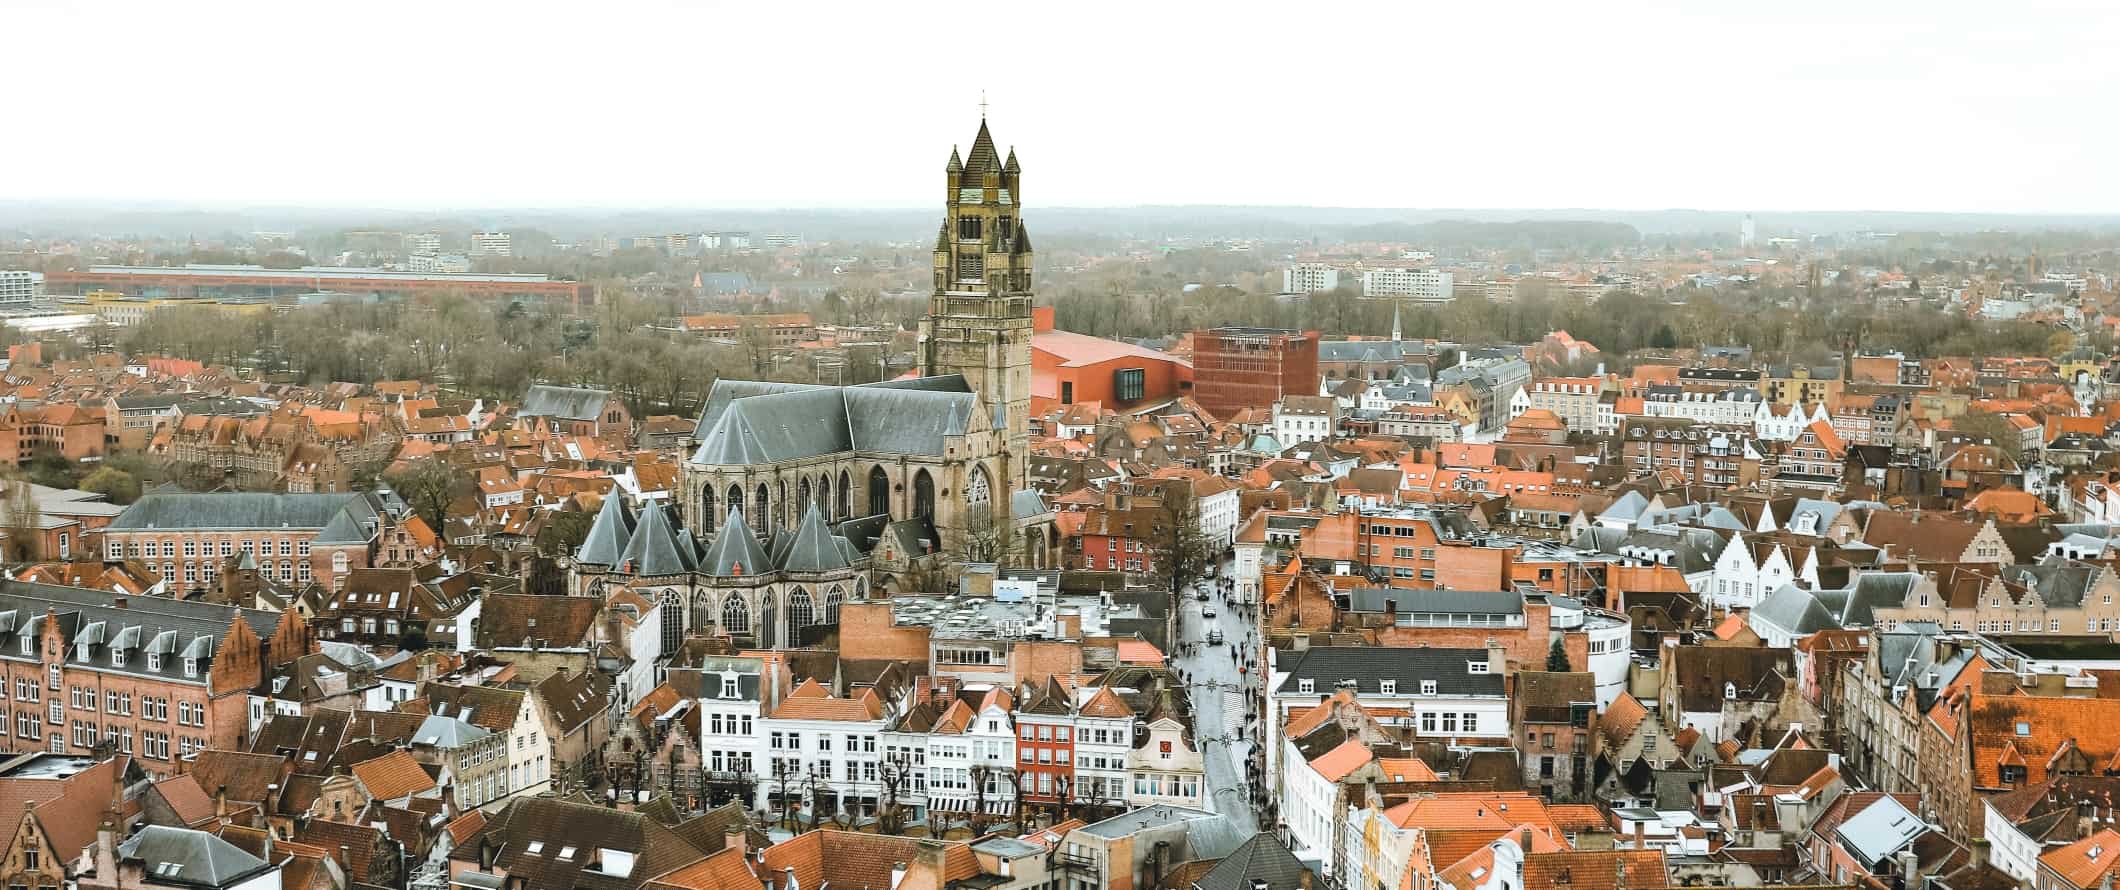 Vista panorâmica dos telhados vermelhos do centro histórico de Bruges com uma grande catedral de pedra no centro, Bélgica